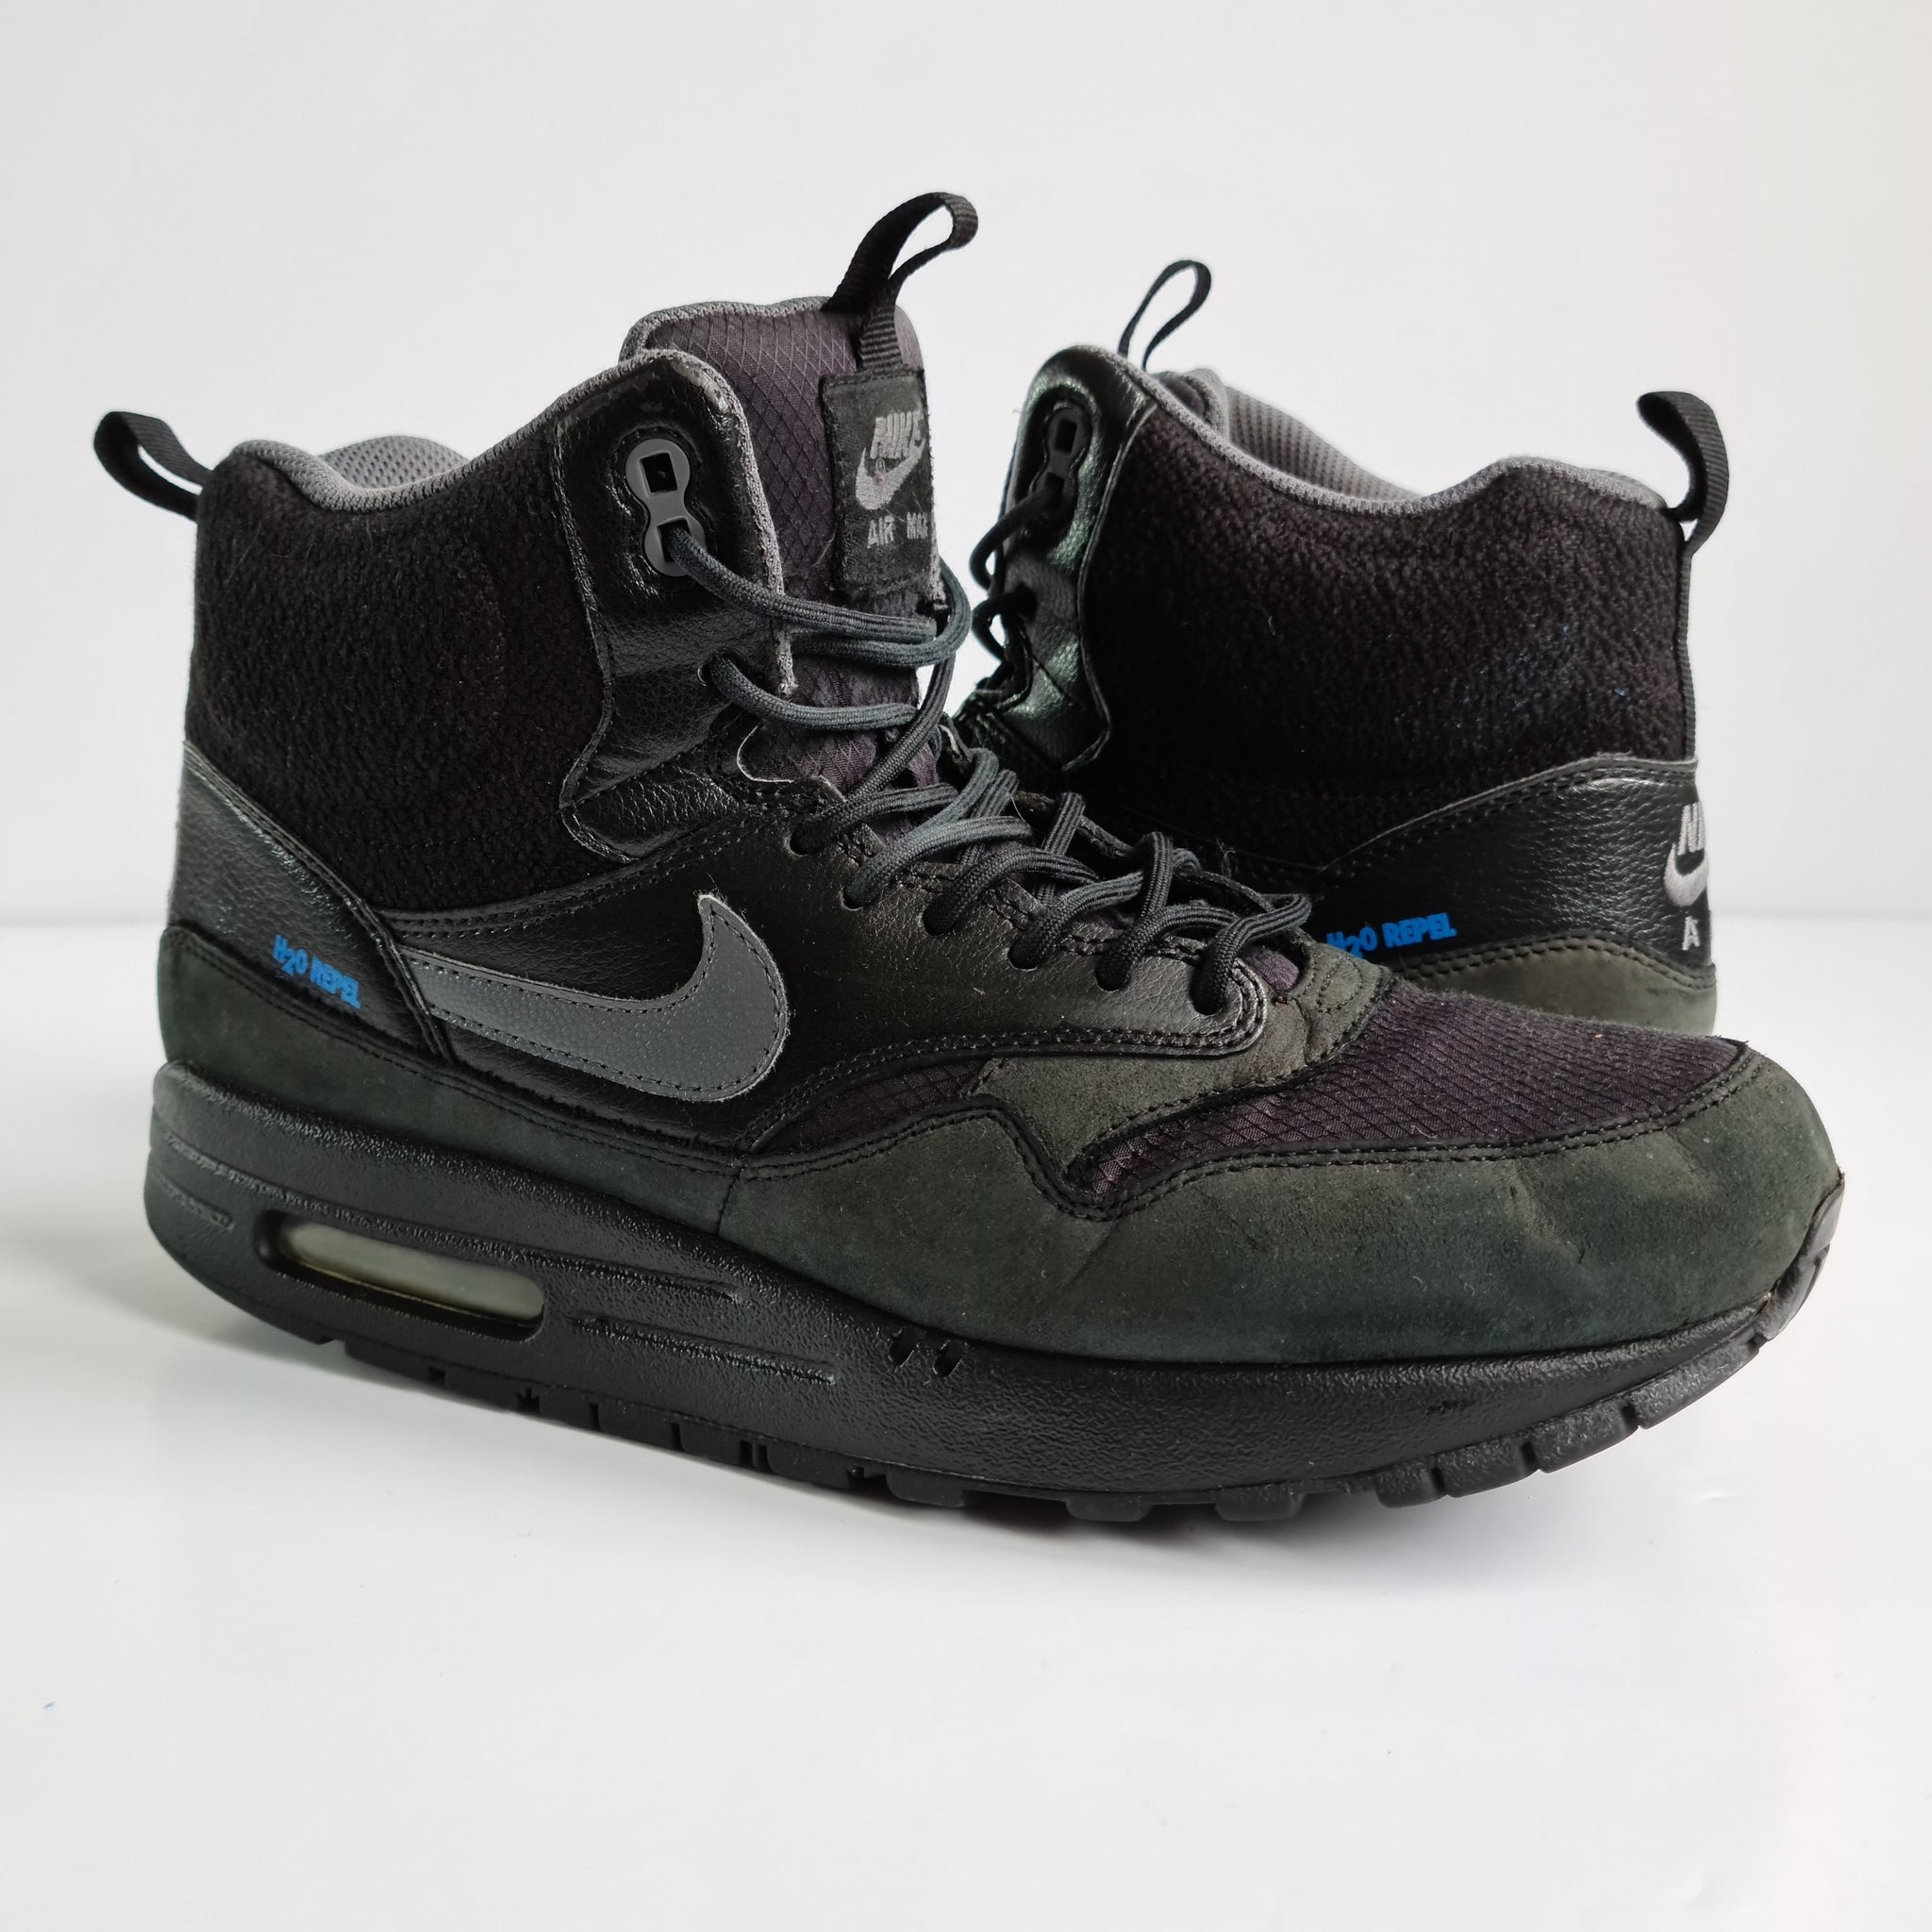 Air Max Mid Sneaker Boot Black UK7